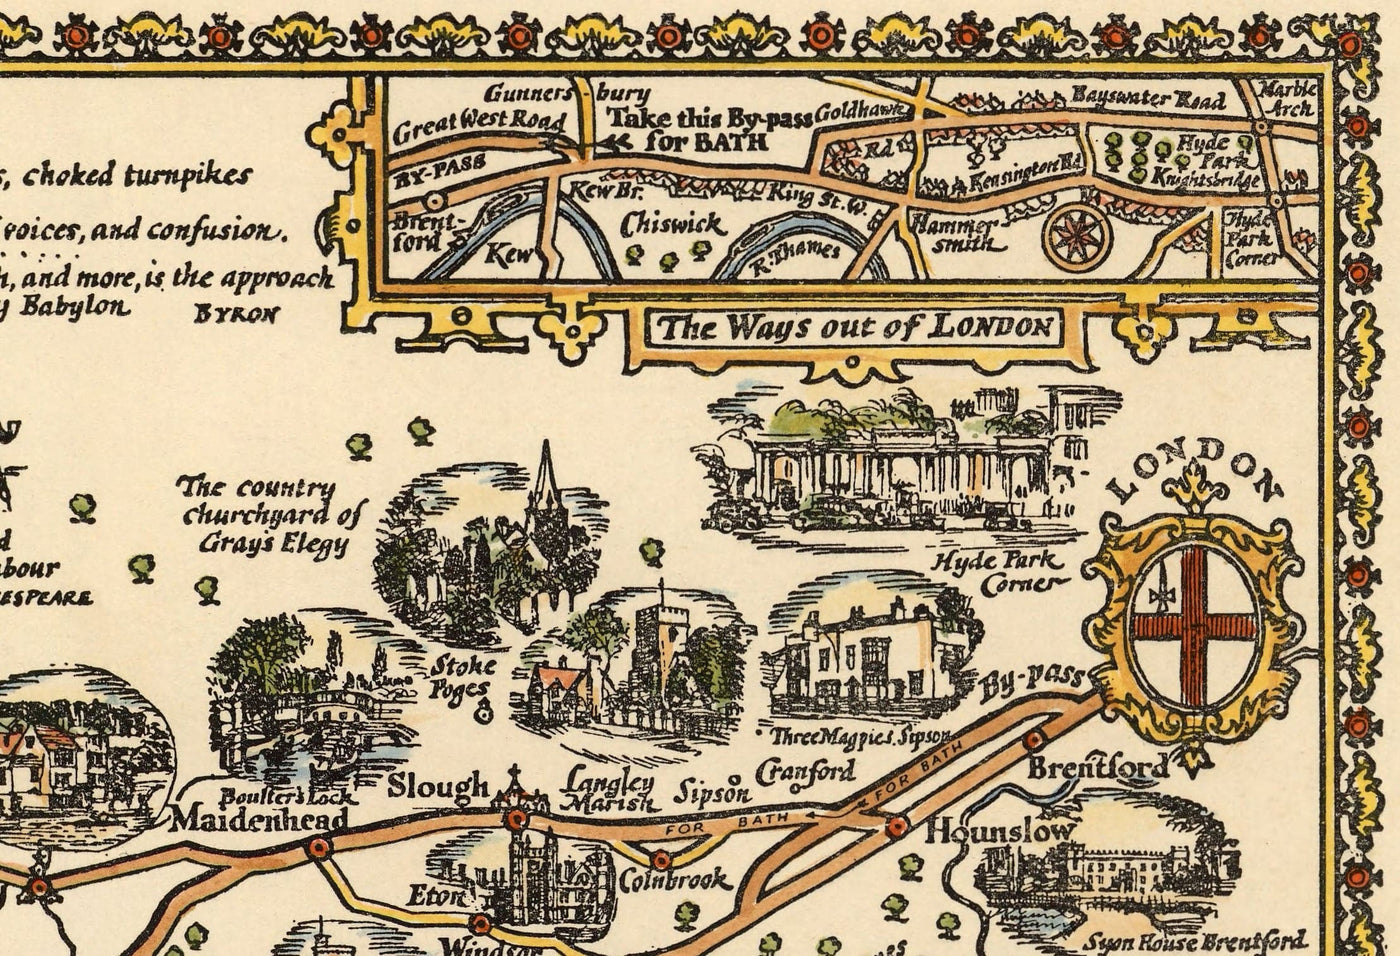 PRATTS Plan de Bath Road, 1930 por a.e. Taylor - Londres, Berkshire, Wiltshire, Gloucestershire, Somerset - Viejo Mapa del coche de la vendimia - Esso, aceite estándar